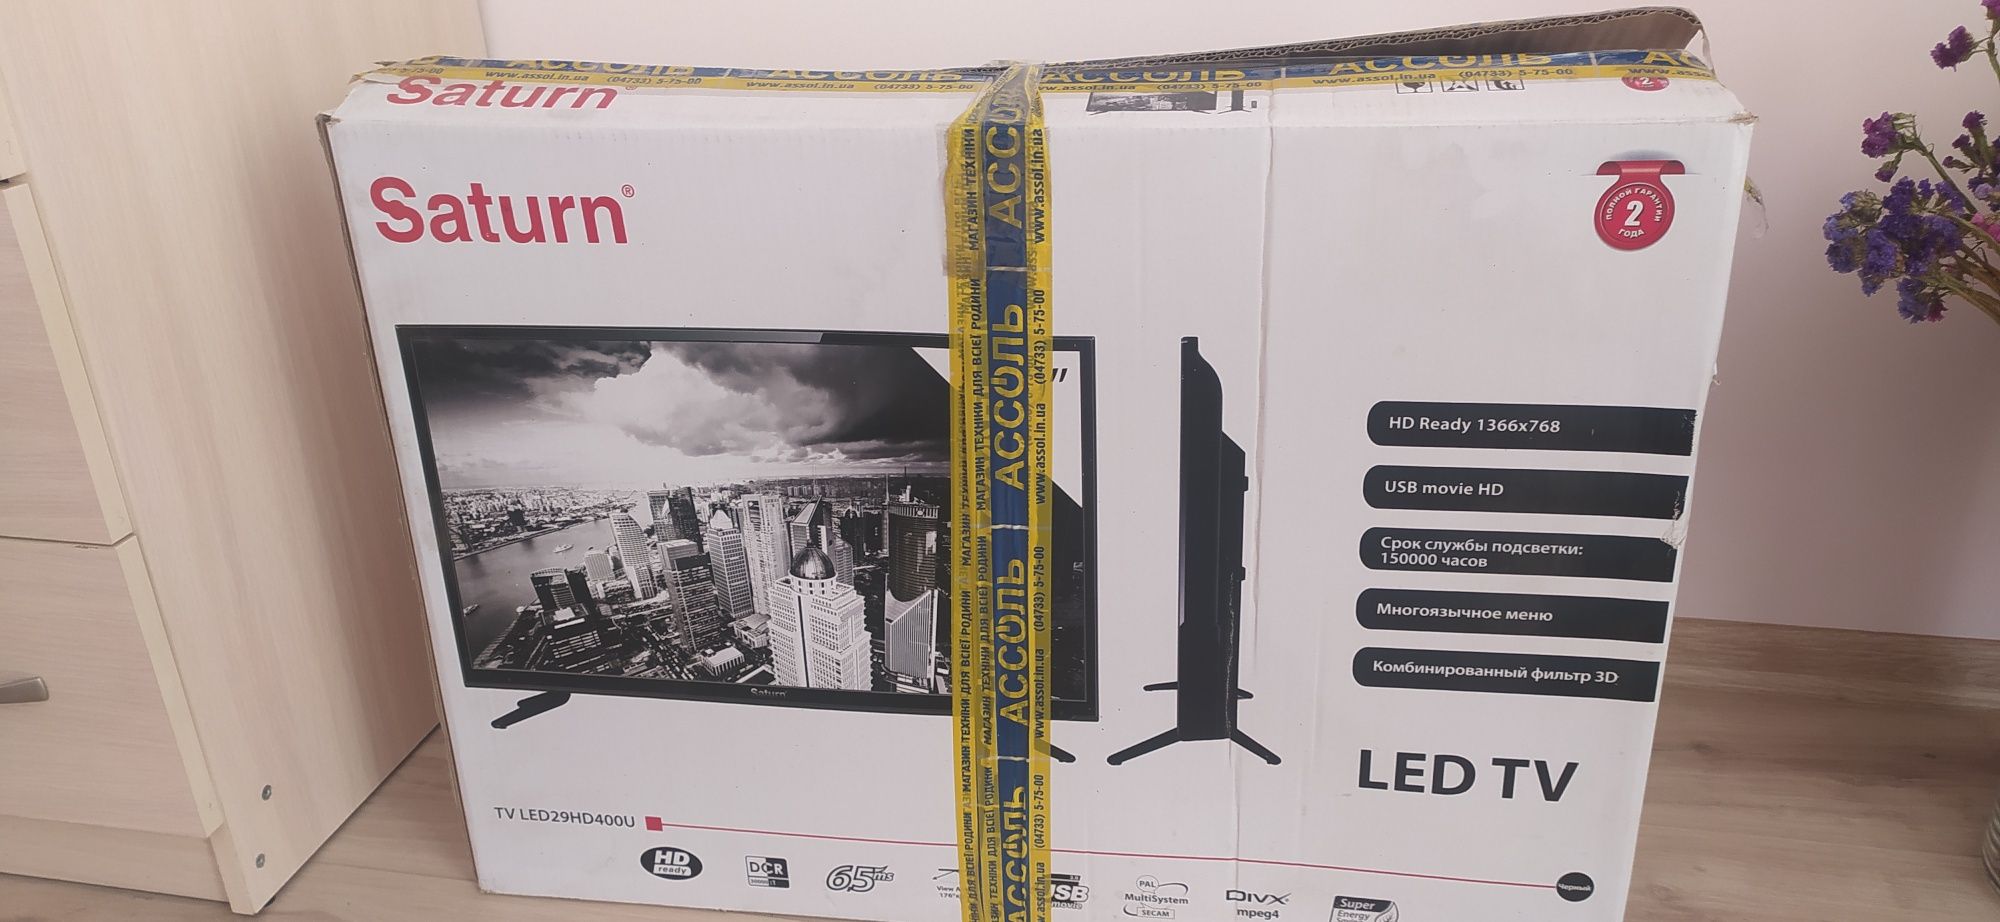 Телевизор Saturn TV LED29HD400U на запчасти